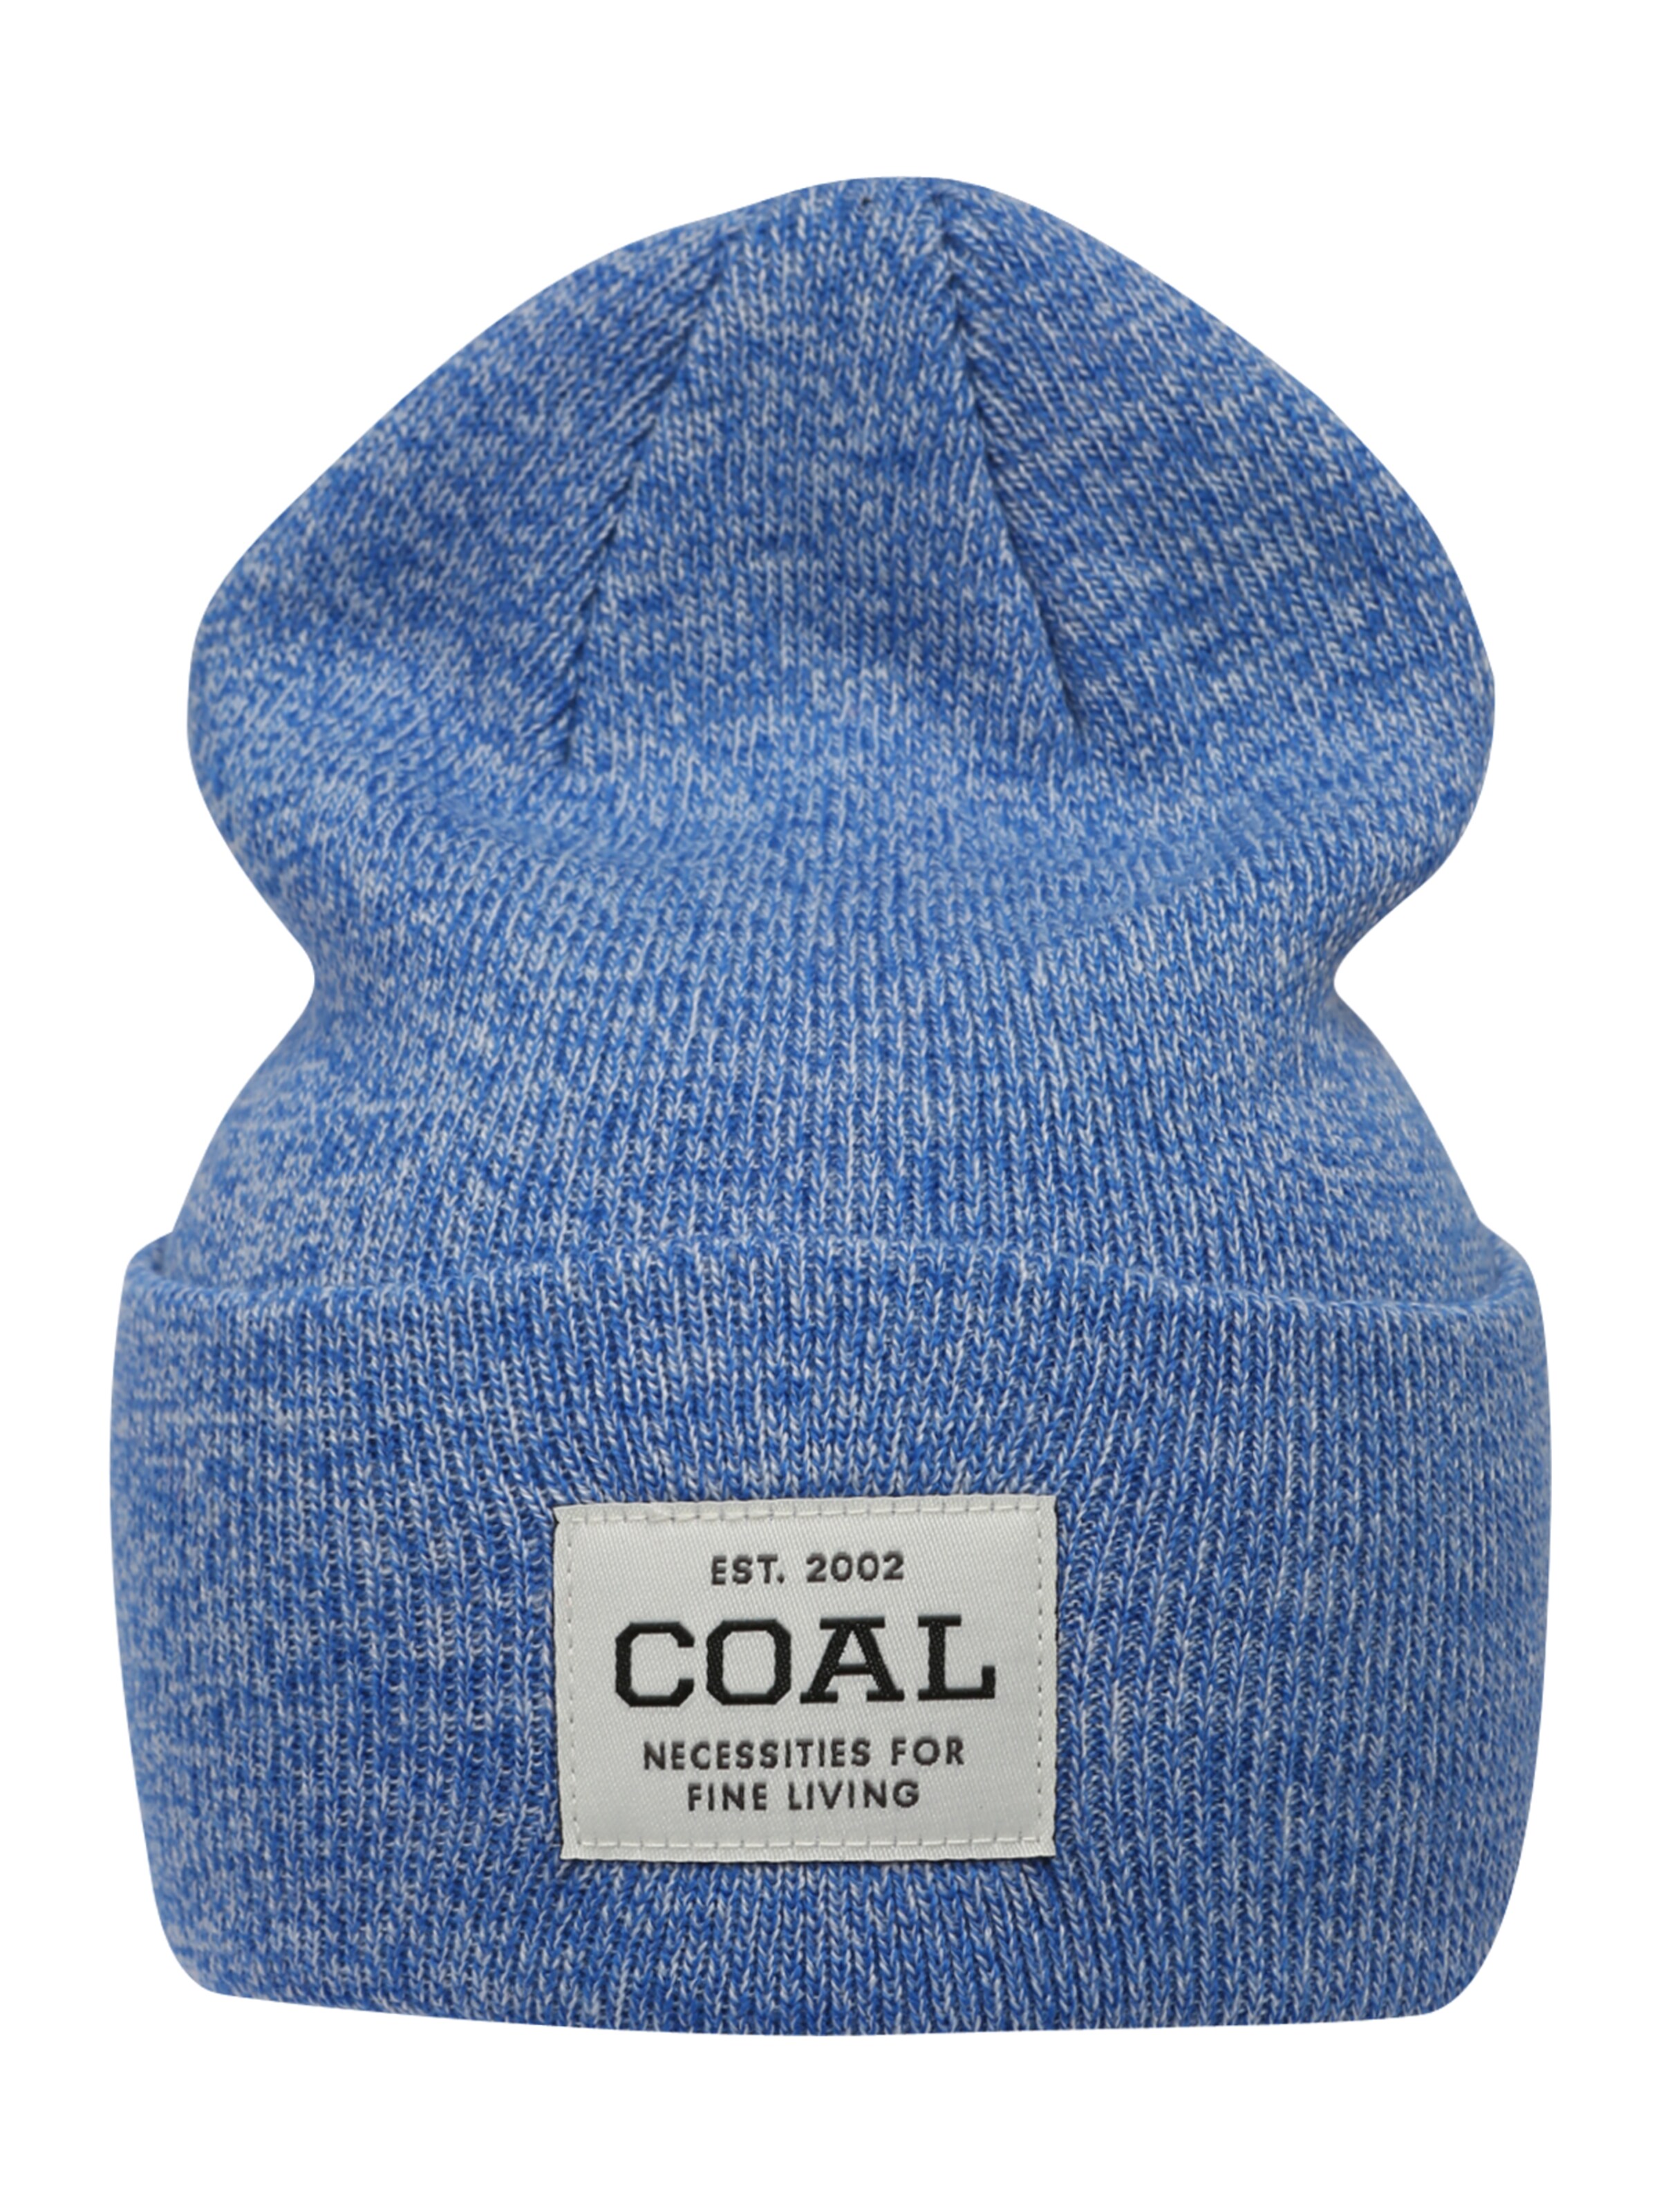 Chapeaux et bonnets Bonnet The Uniform Coal en Bleu Roi 